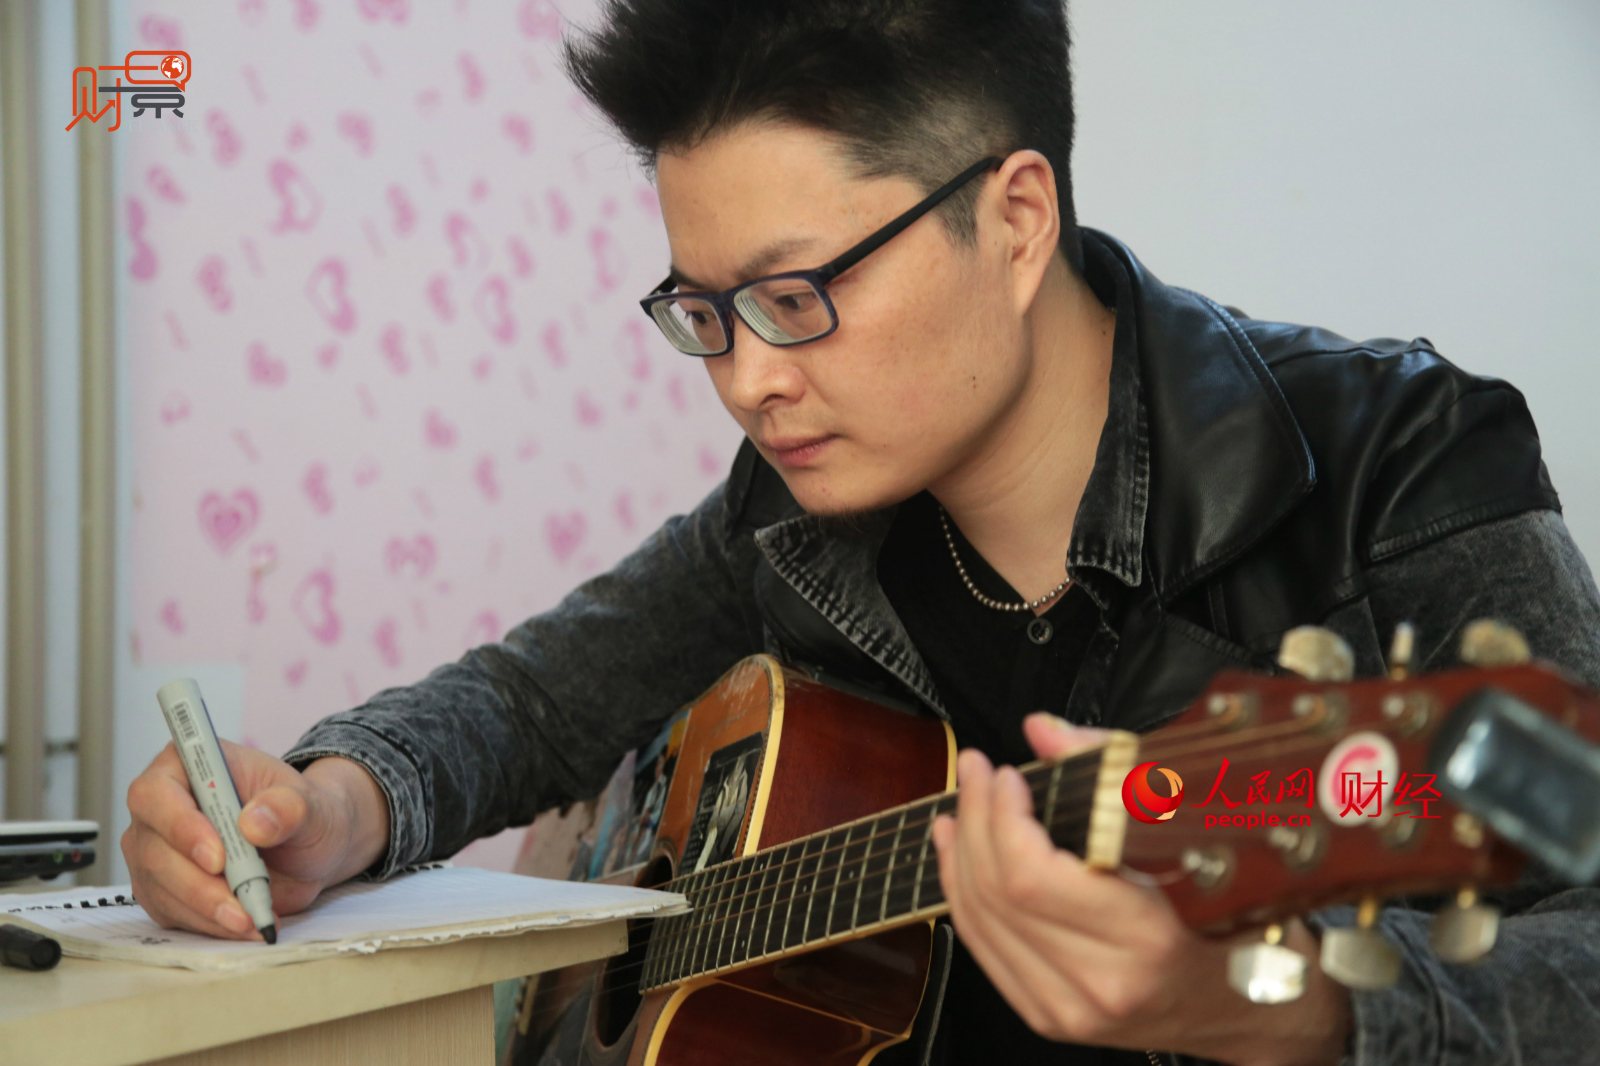 《财景》:实拍北京簋街流浪歌手的一天 日收入